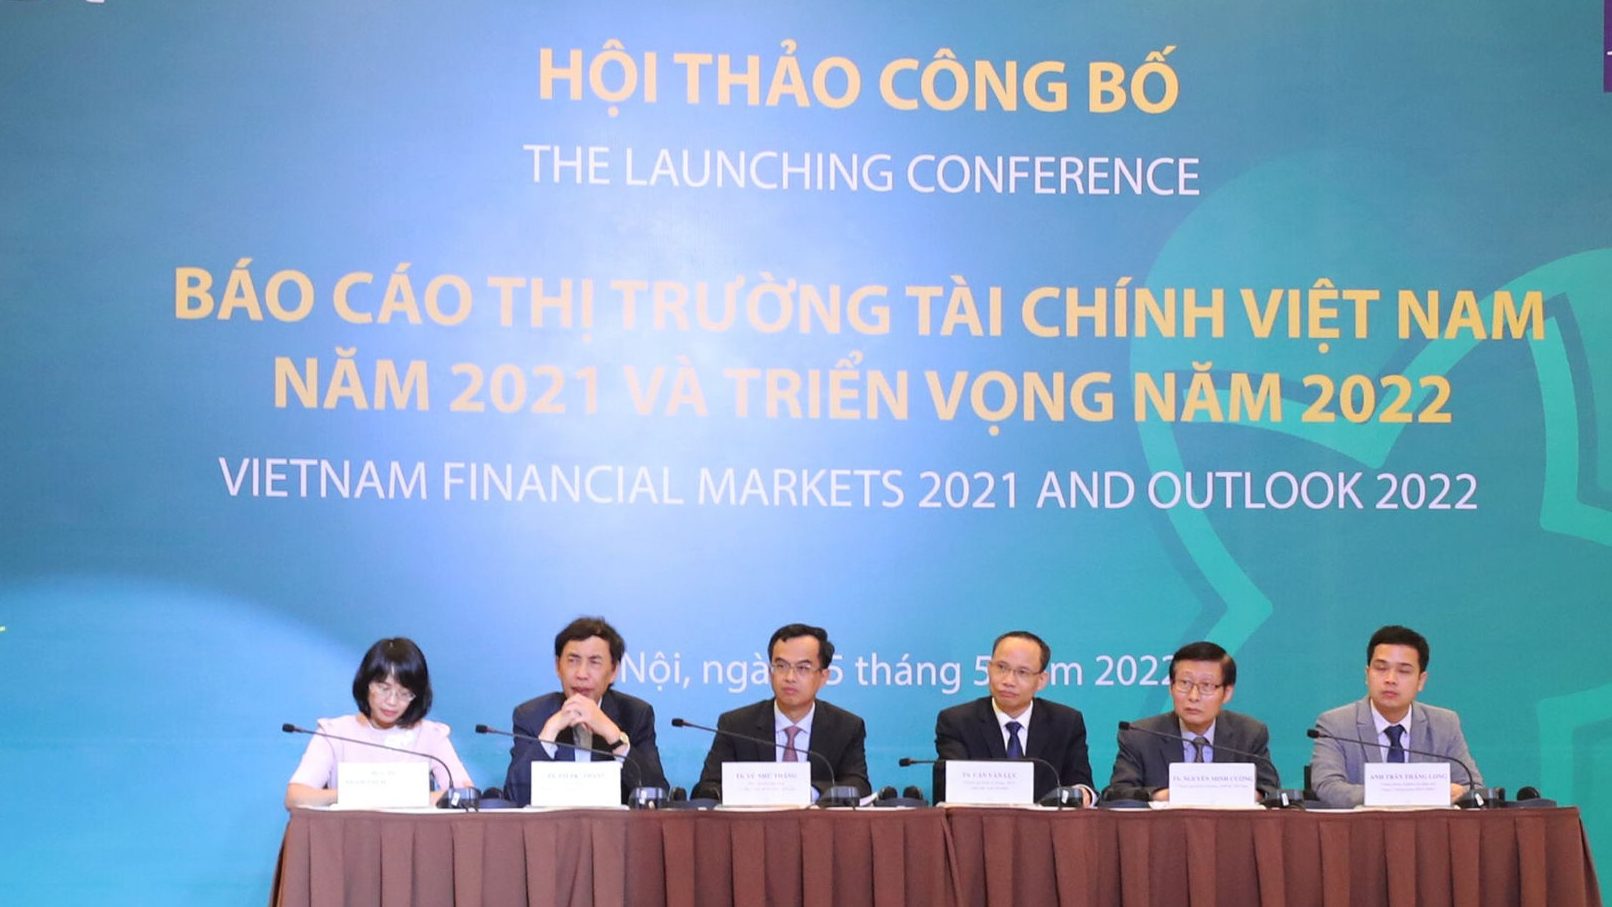 Buổi hội thảo công bố báo cáo “Thị trường tài chính Việt Nam 2021 và triển vọng 2022” tại Hà Nội do BIDV và ADB tổ chức hôm 25/5/2022. Ảnh: Tạp chí Thị trường Tài chính Tiền tệ